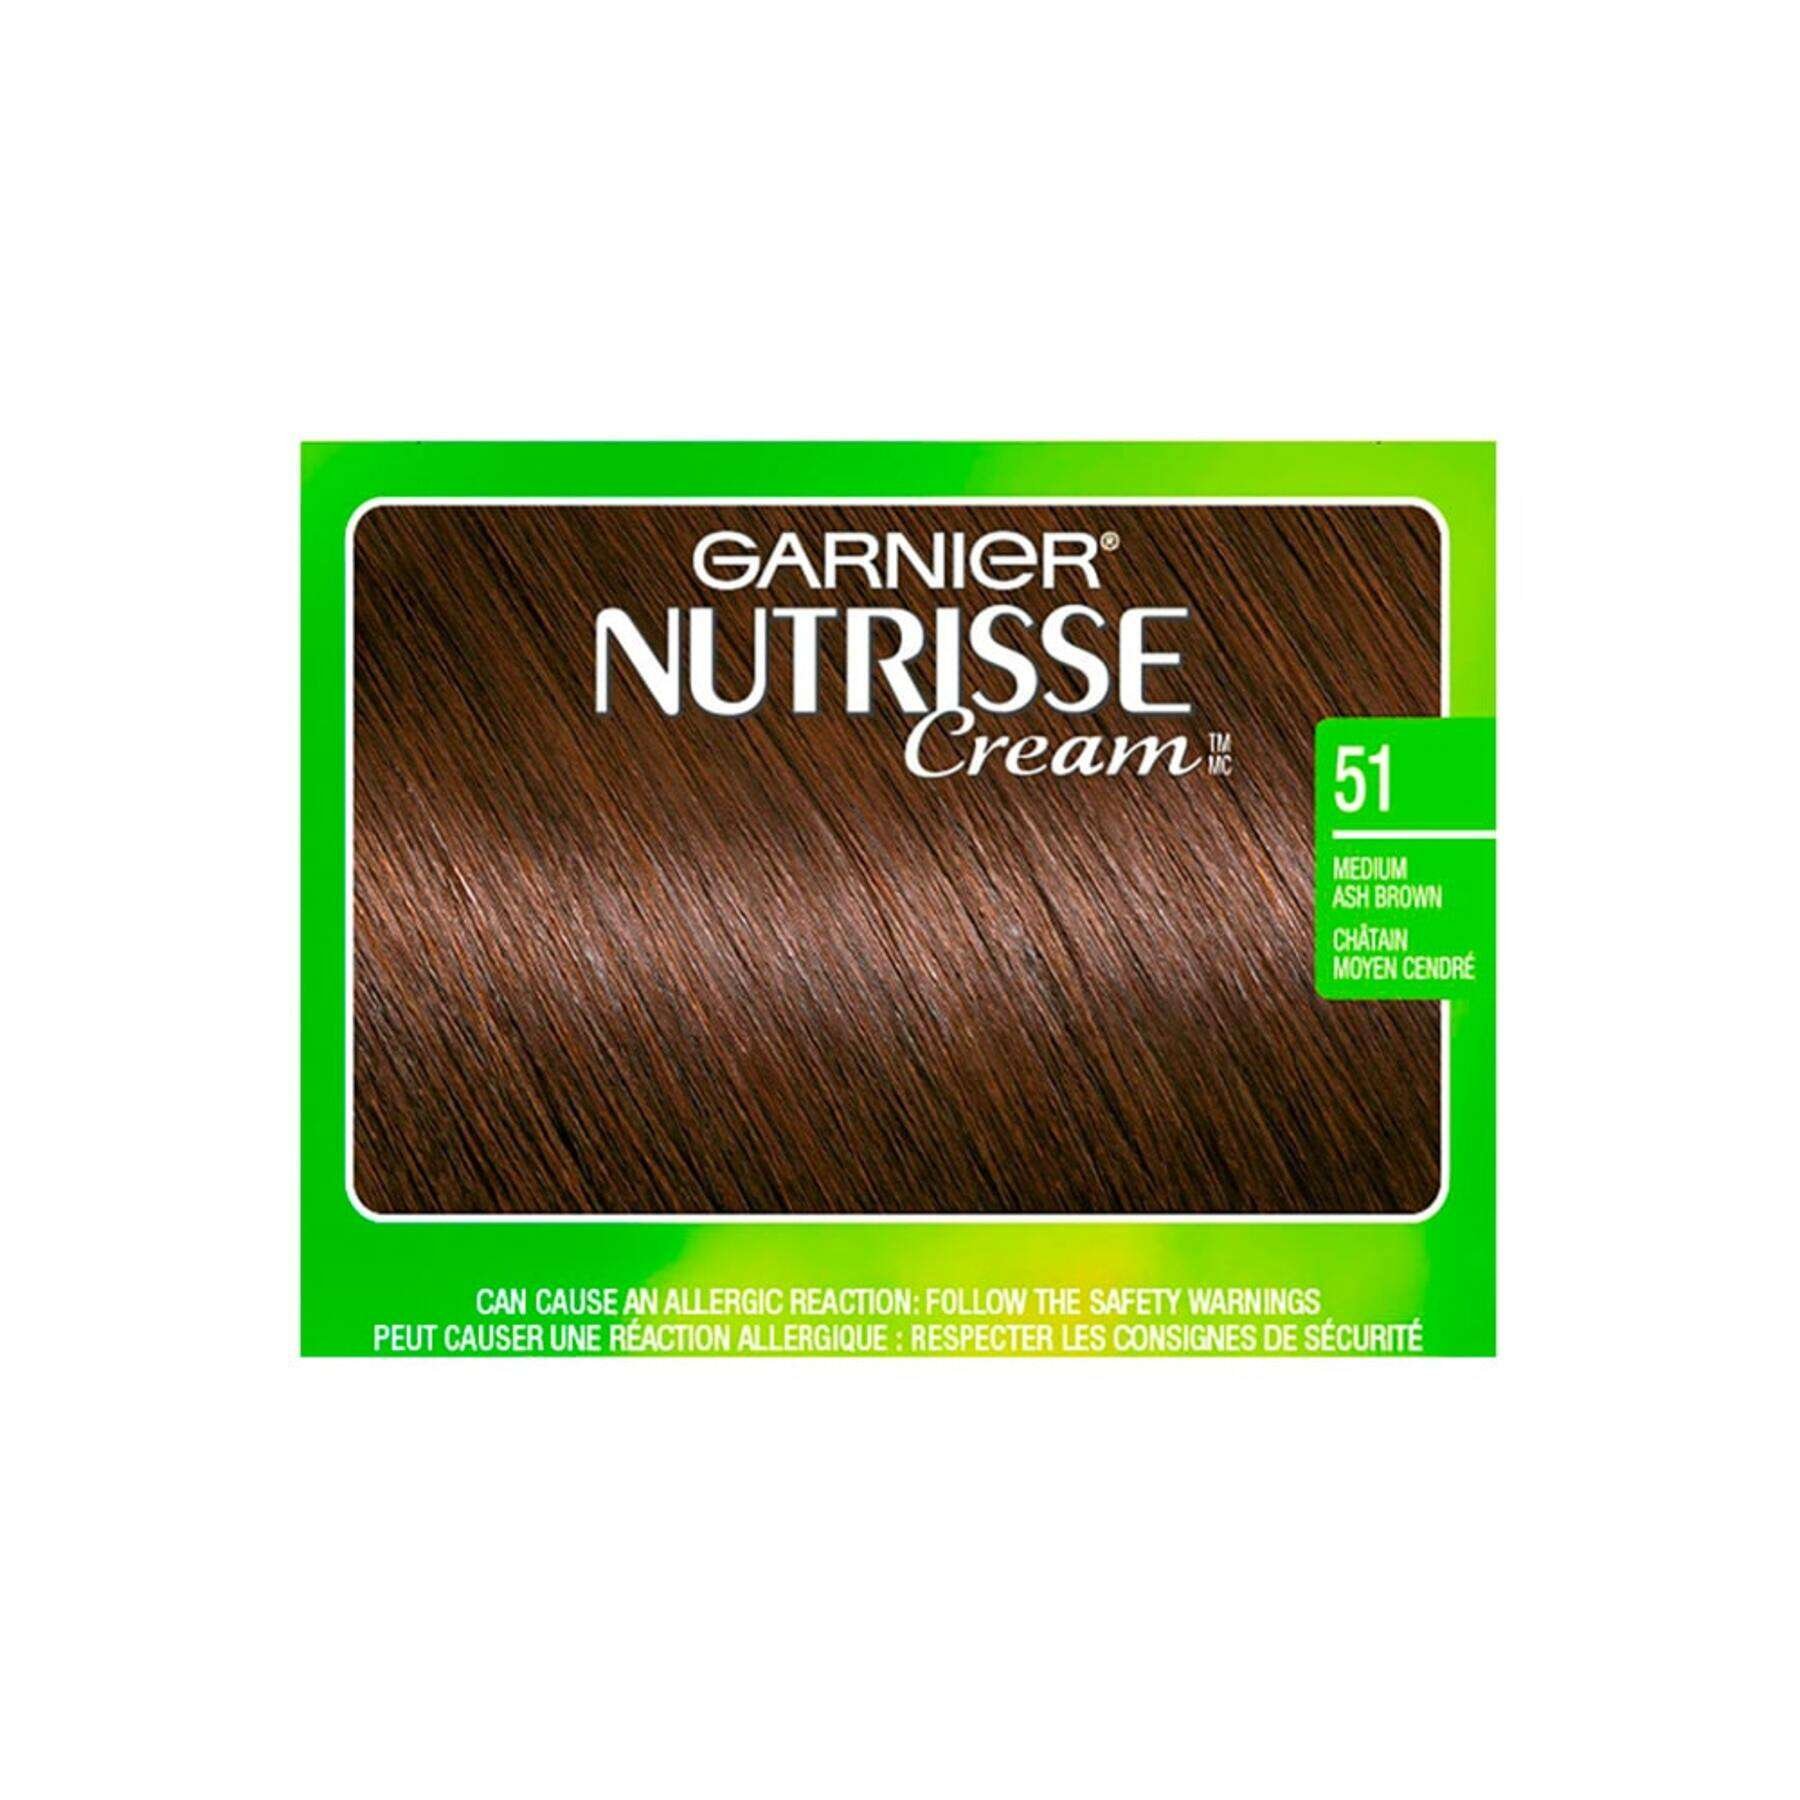 garnier hair dye nutrisse cream 51 medium ash brown 0603084494903 swatch